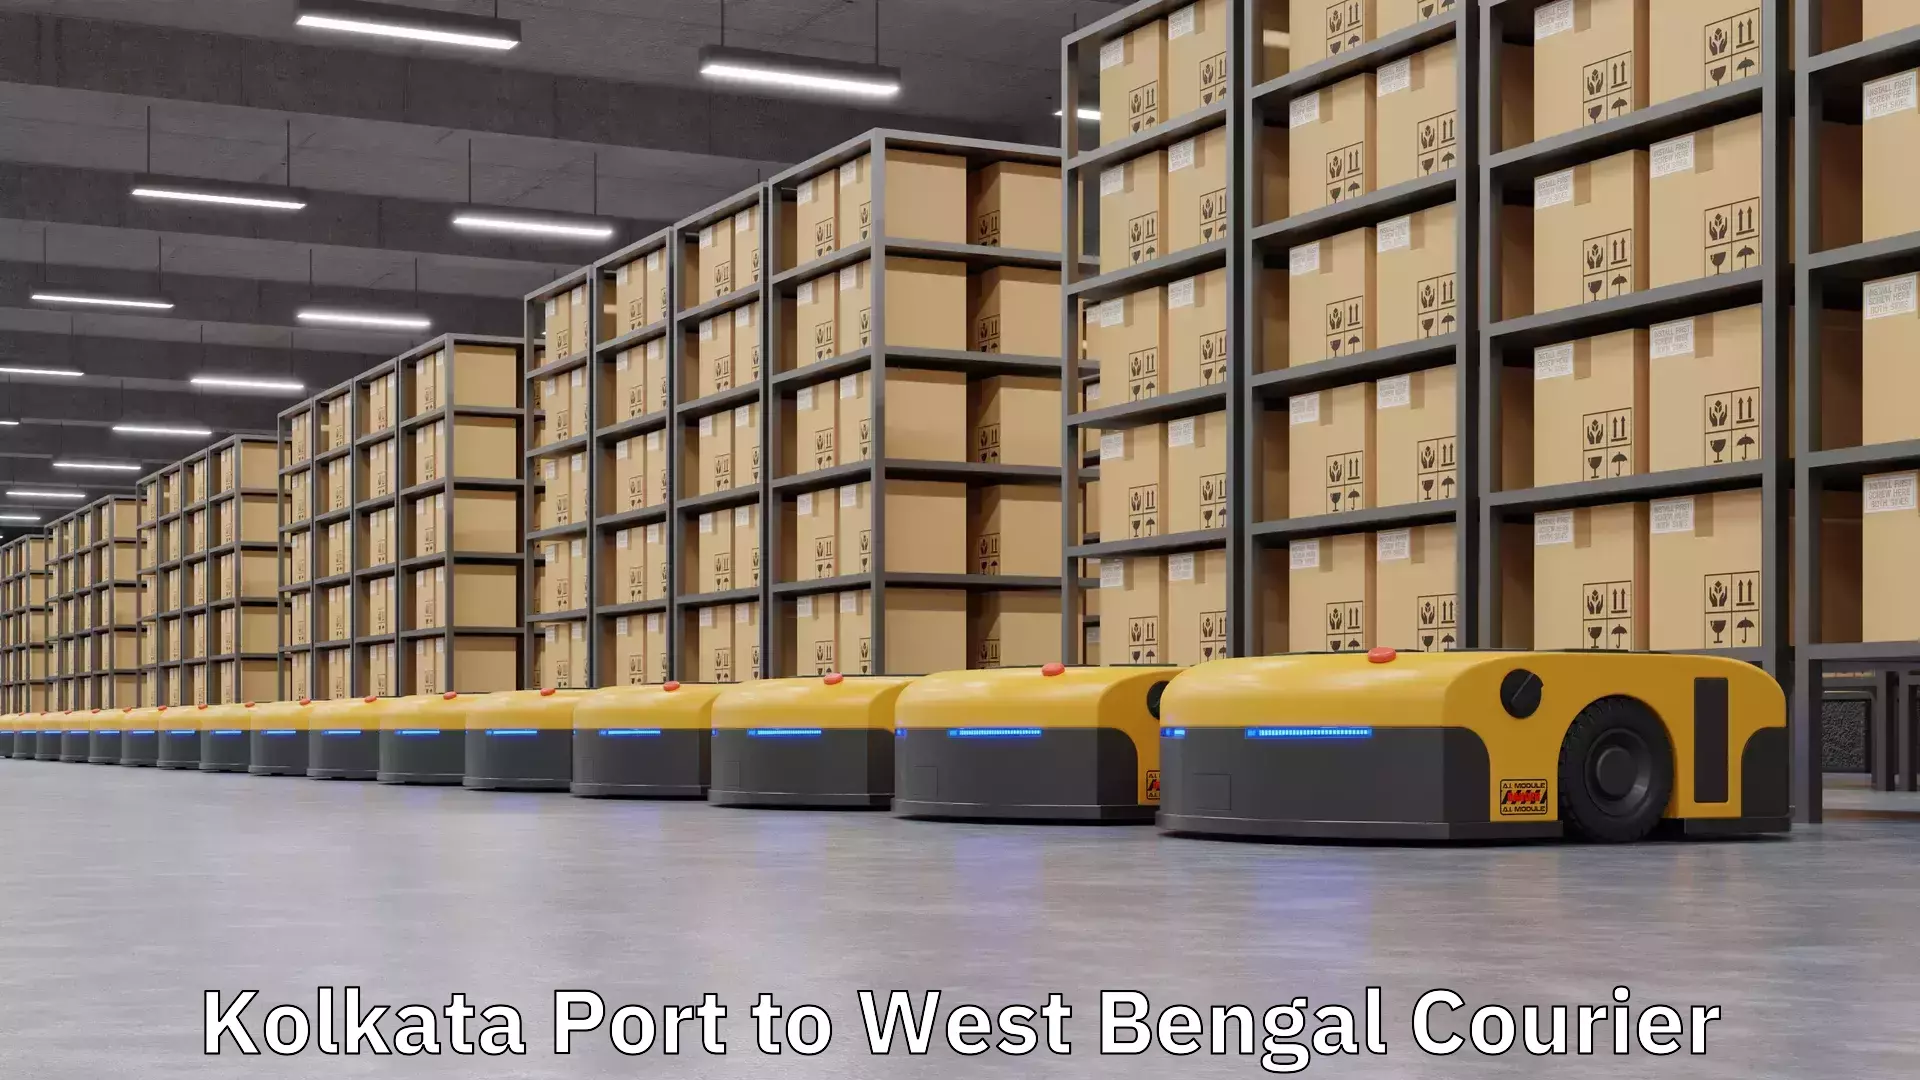 On-call courier service Kolkata Port to Kolkata Port